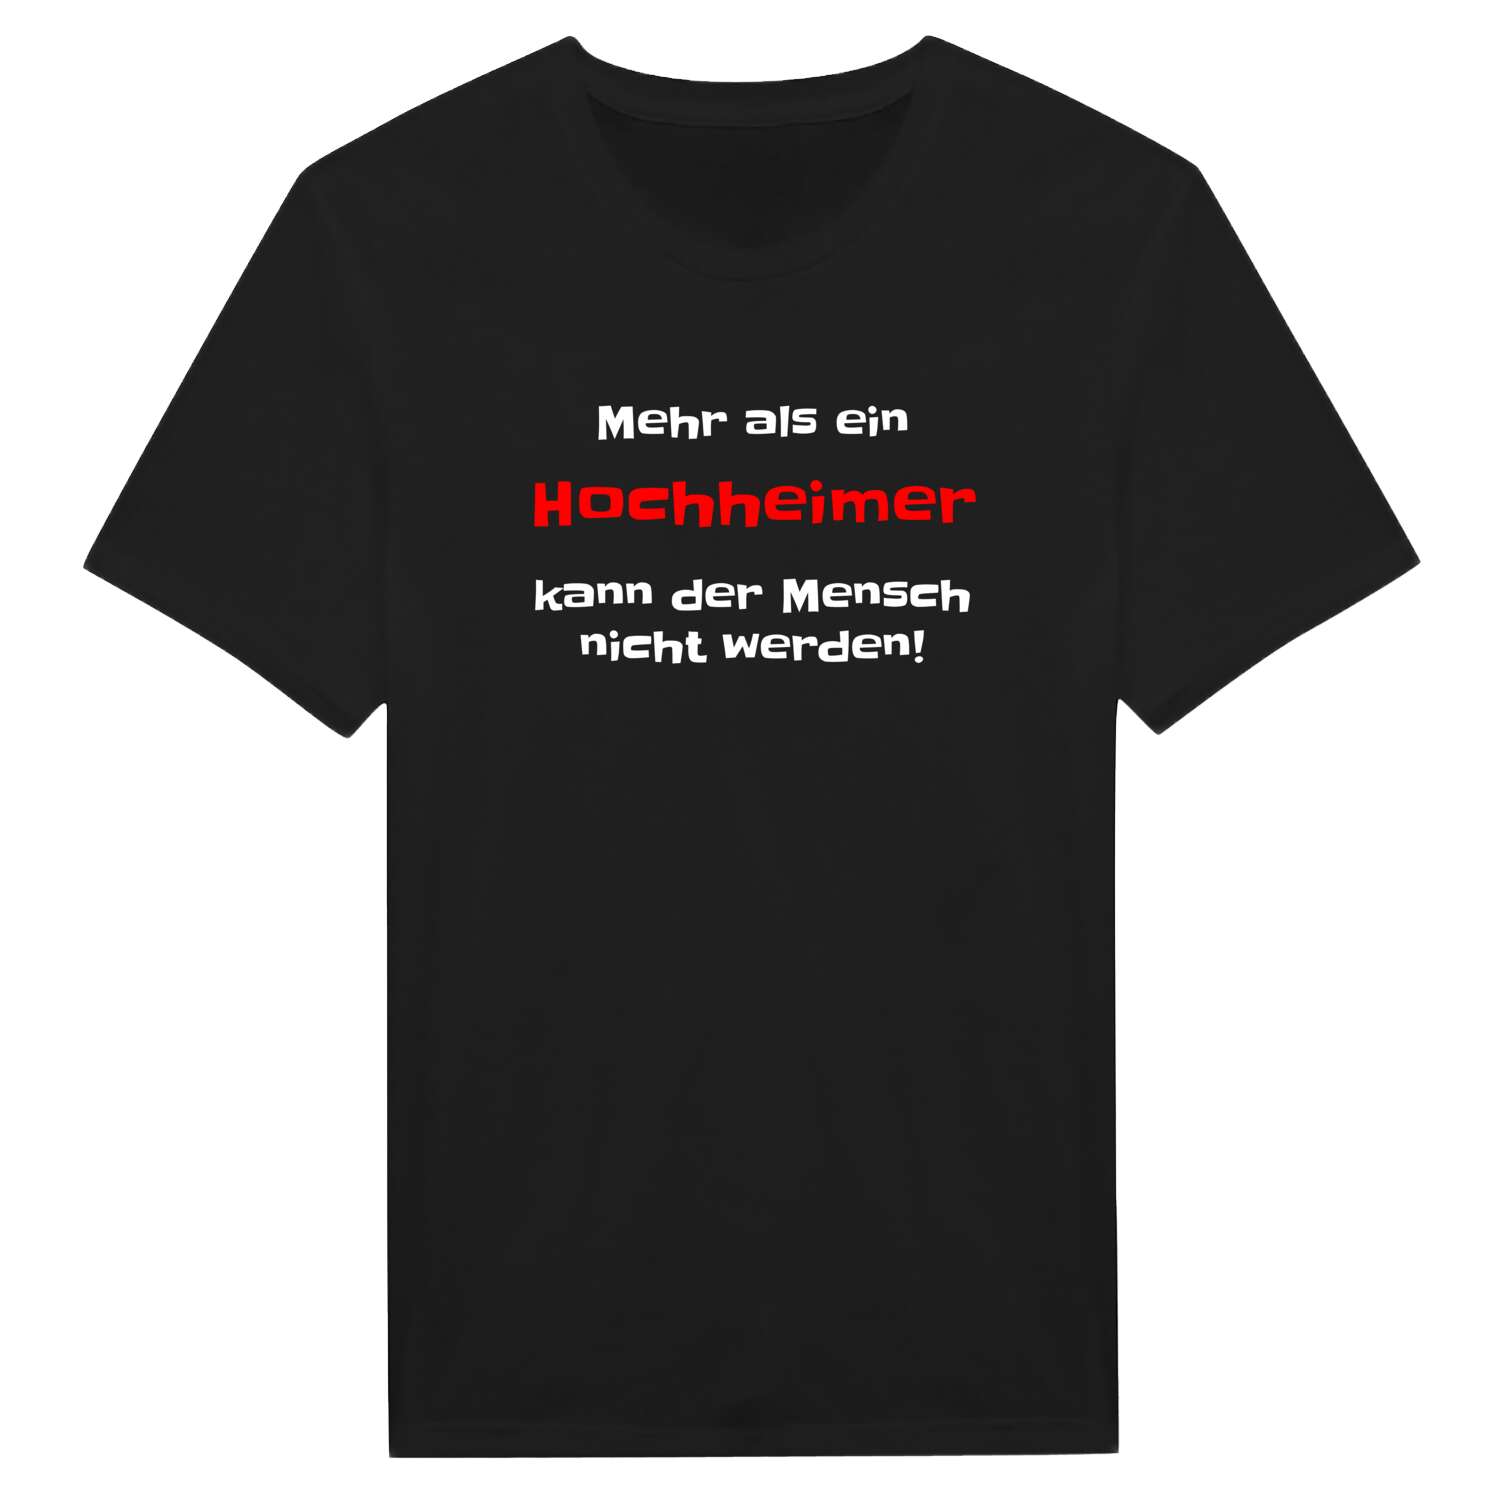 Hochheim T-Shirt »Mehr als ein«